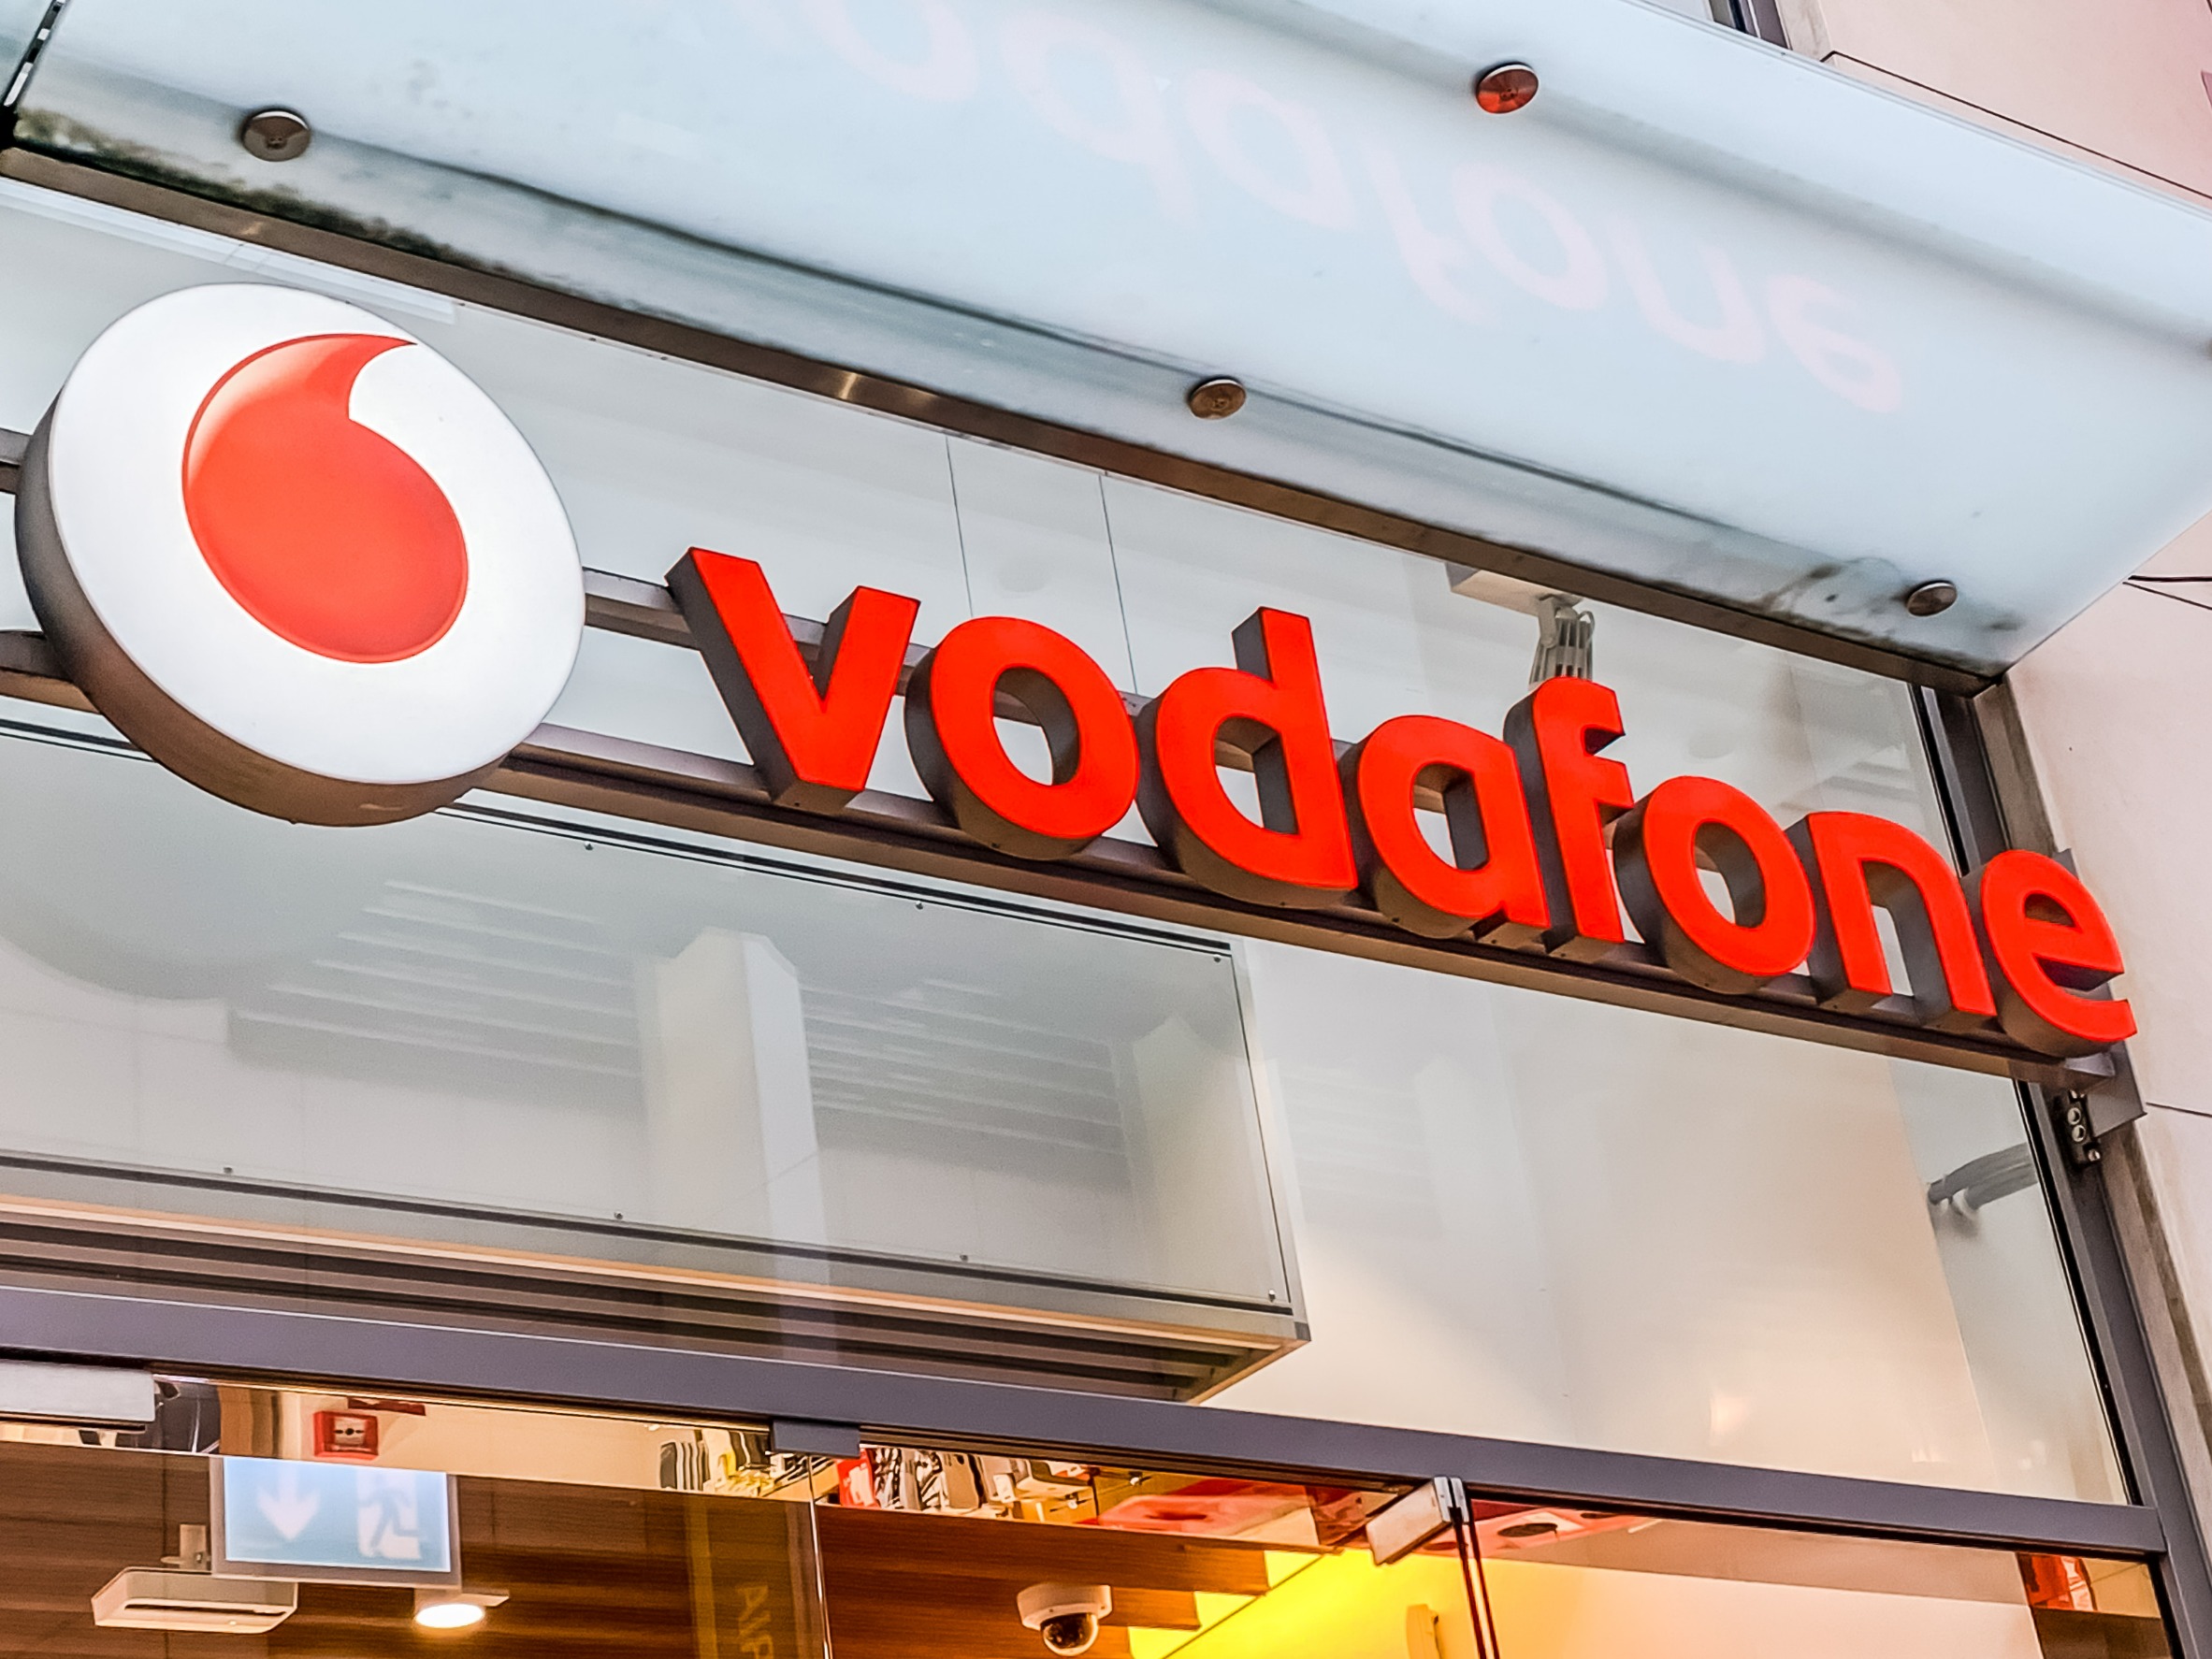 Az európai joggyakorlatnak megfelelően, jogszerűen járt el a magyar kormány a Vodafone tulajdonszerzés ügyében